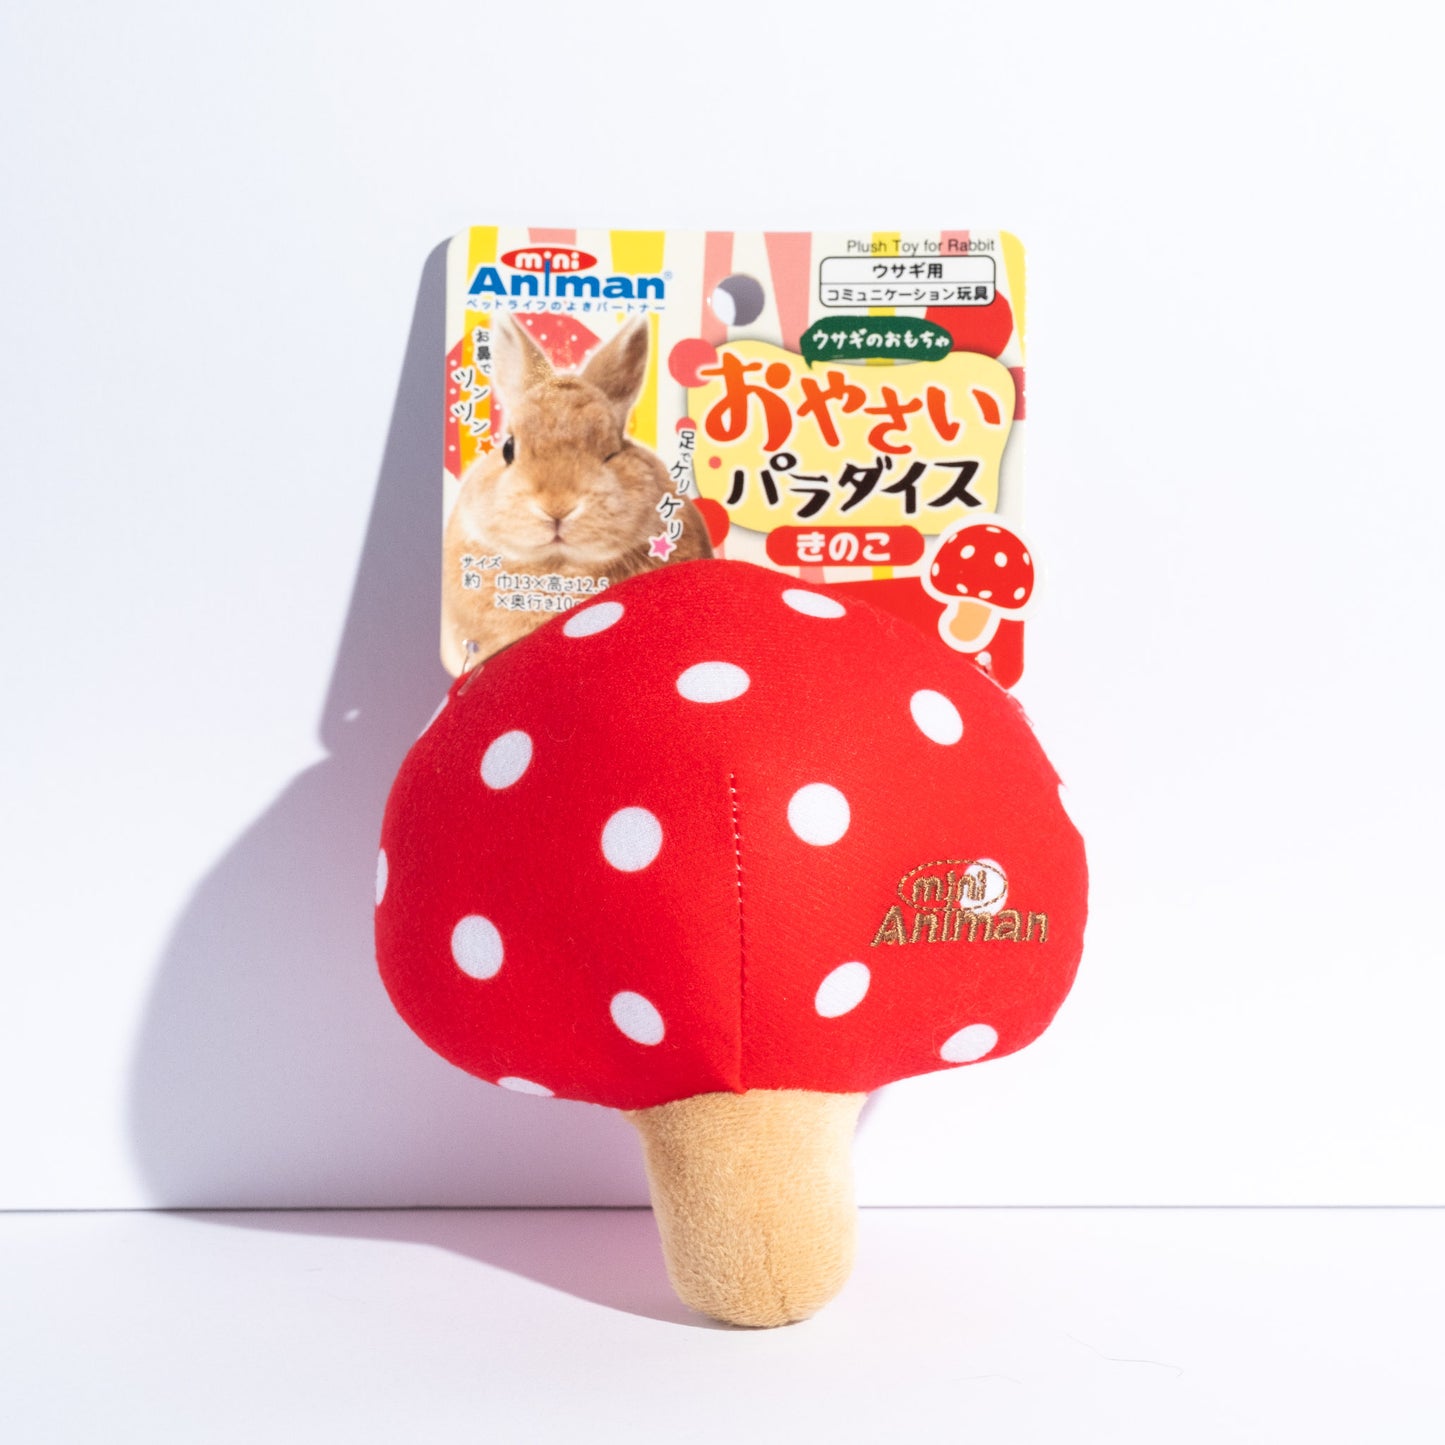 Doggyman Mushroom Chew Toy